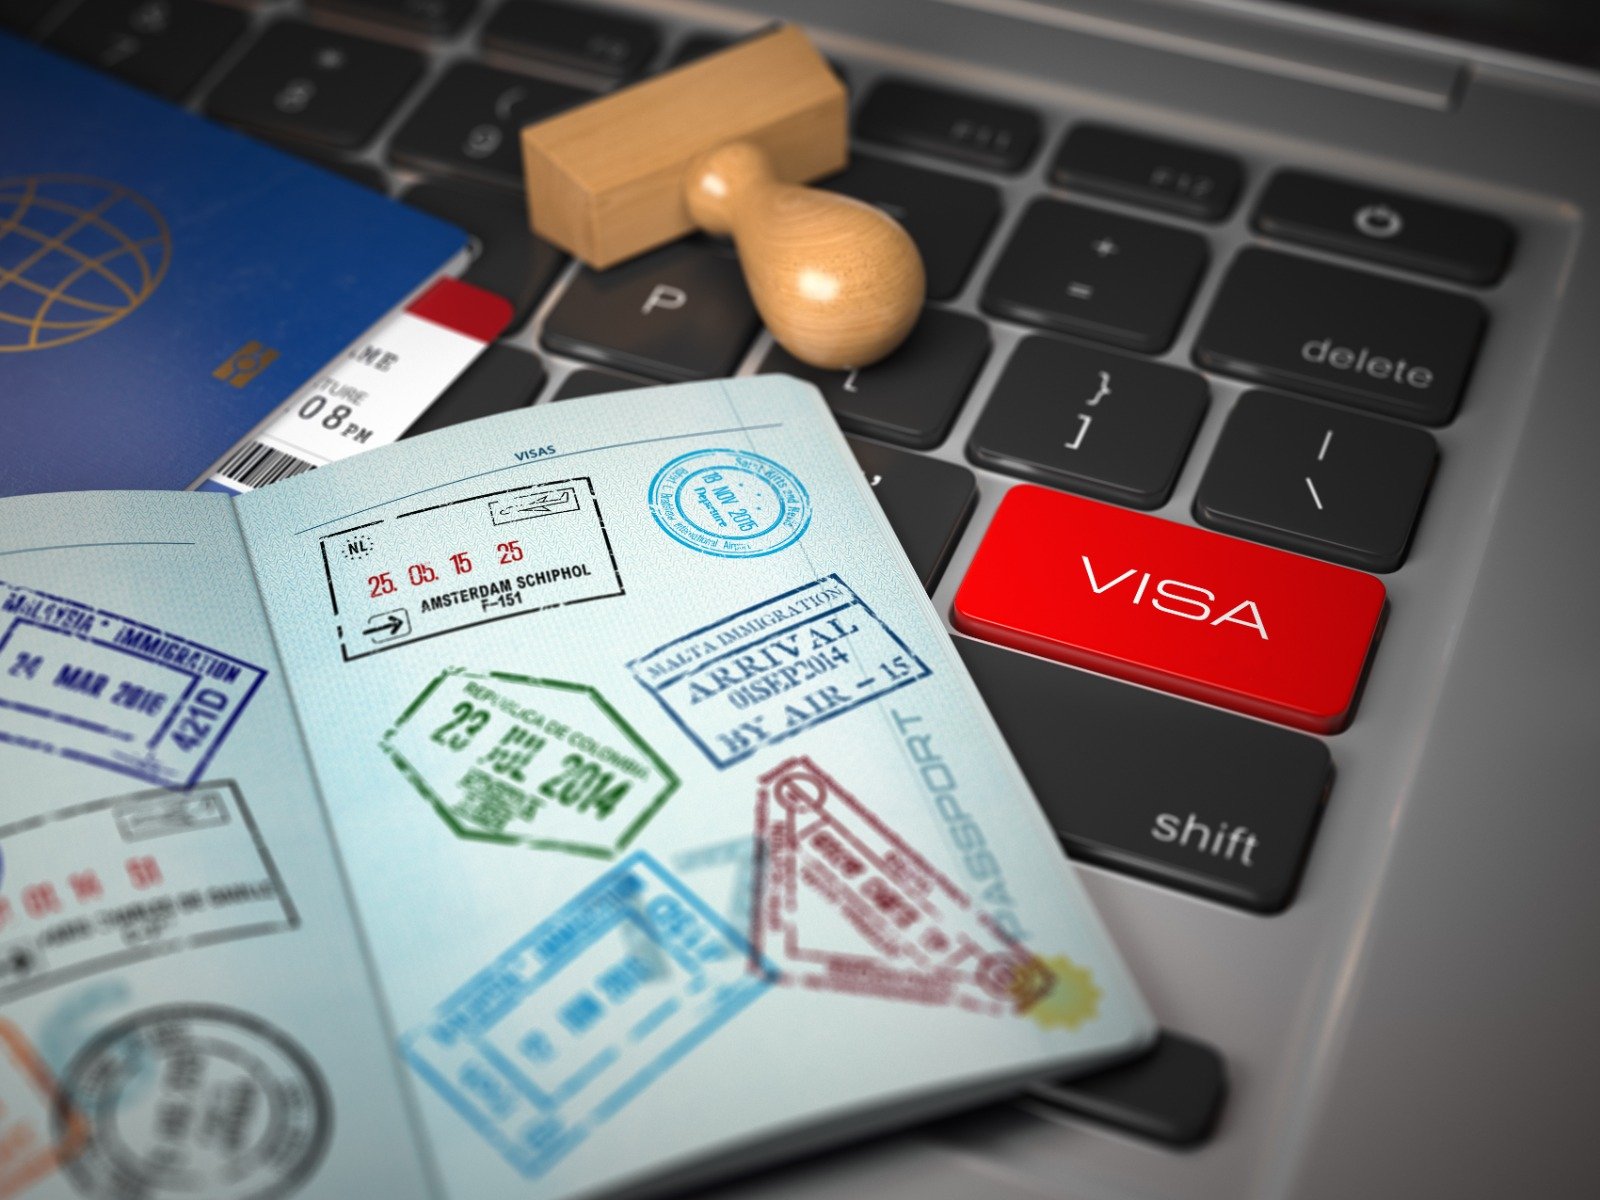 Vietnam Investor Visa